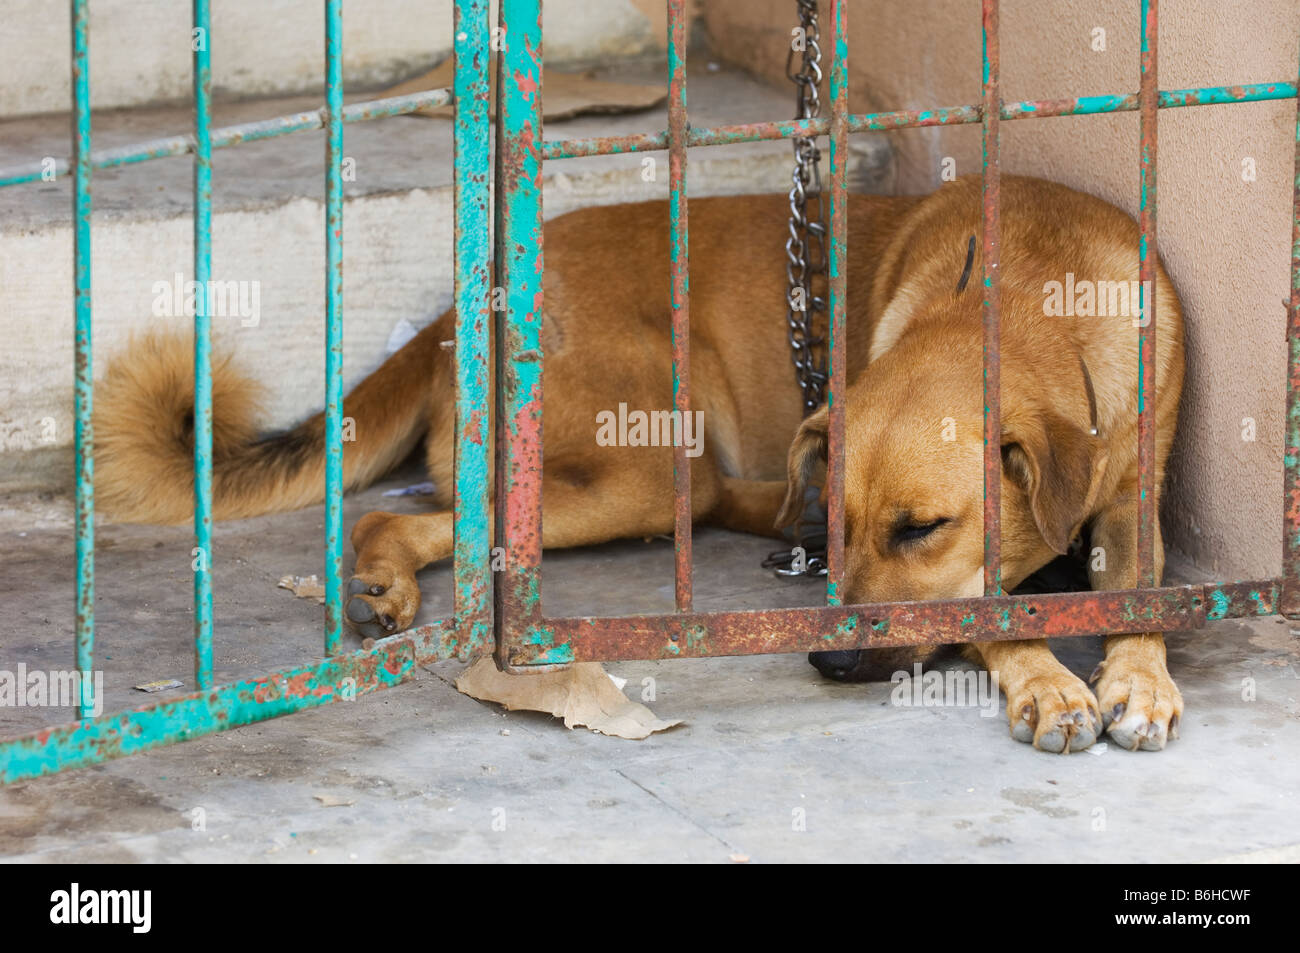 Captive dog Lebanon Middle East Stock Photo Alamy